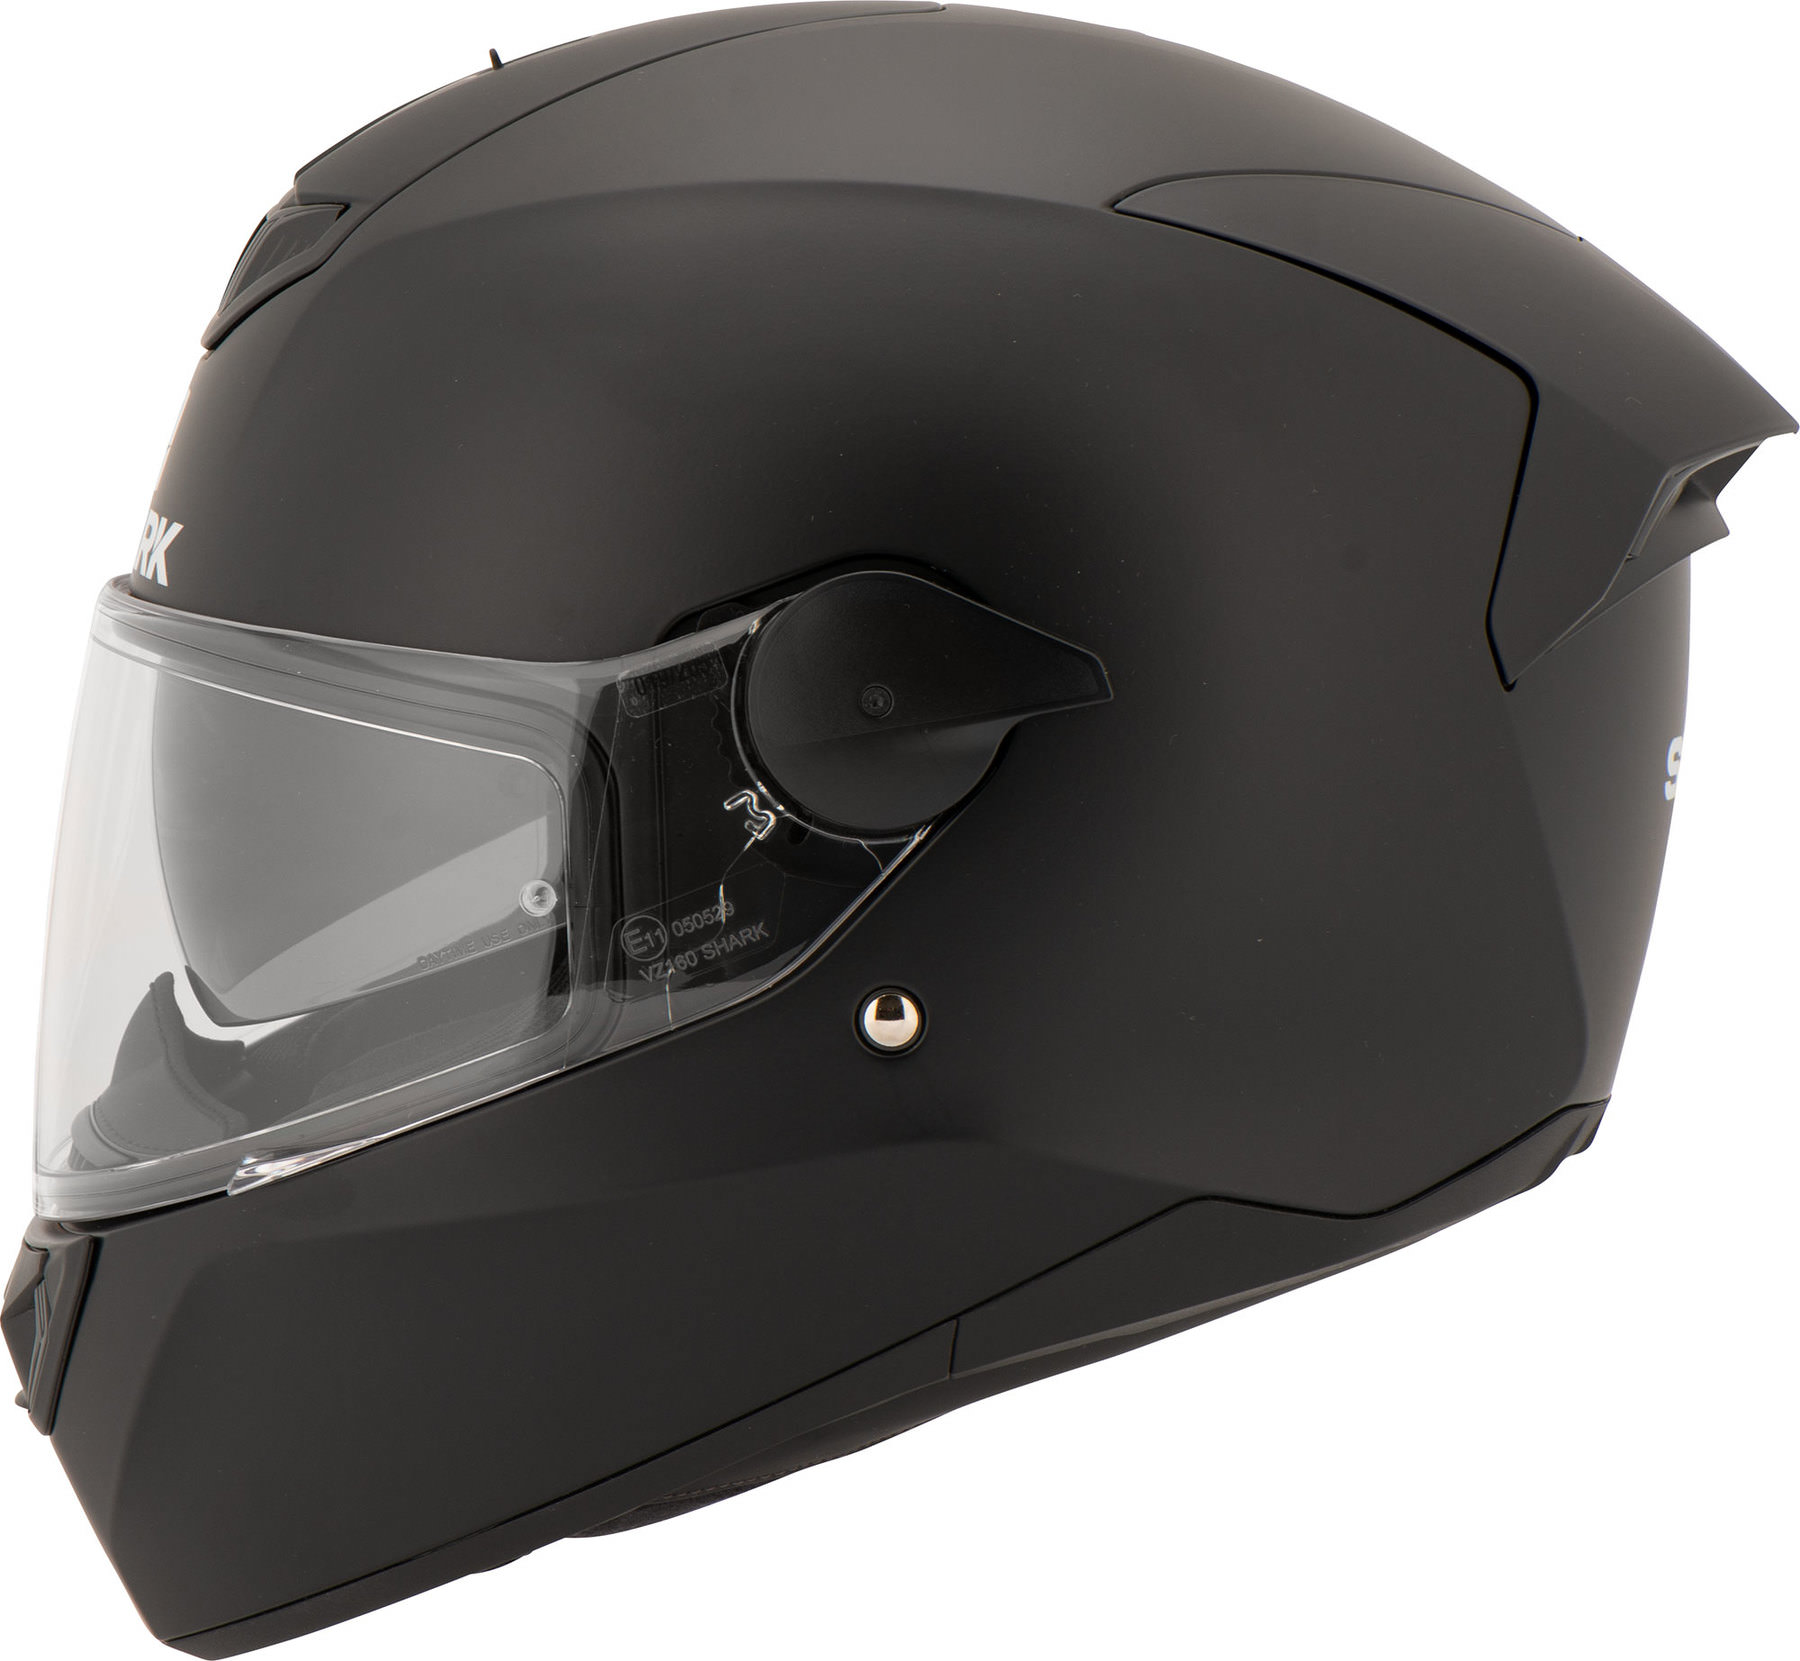 XL Shark Motorrad Helm Integralhelm D-Skwal Neu Blank Mat schwarz Gr XS